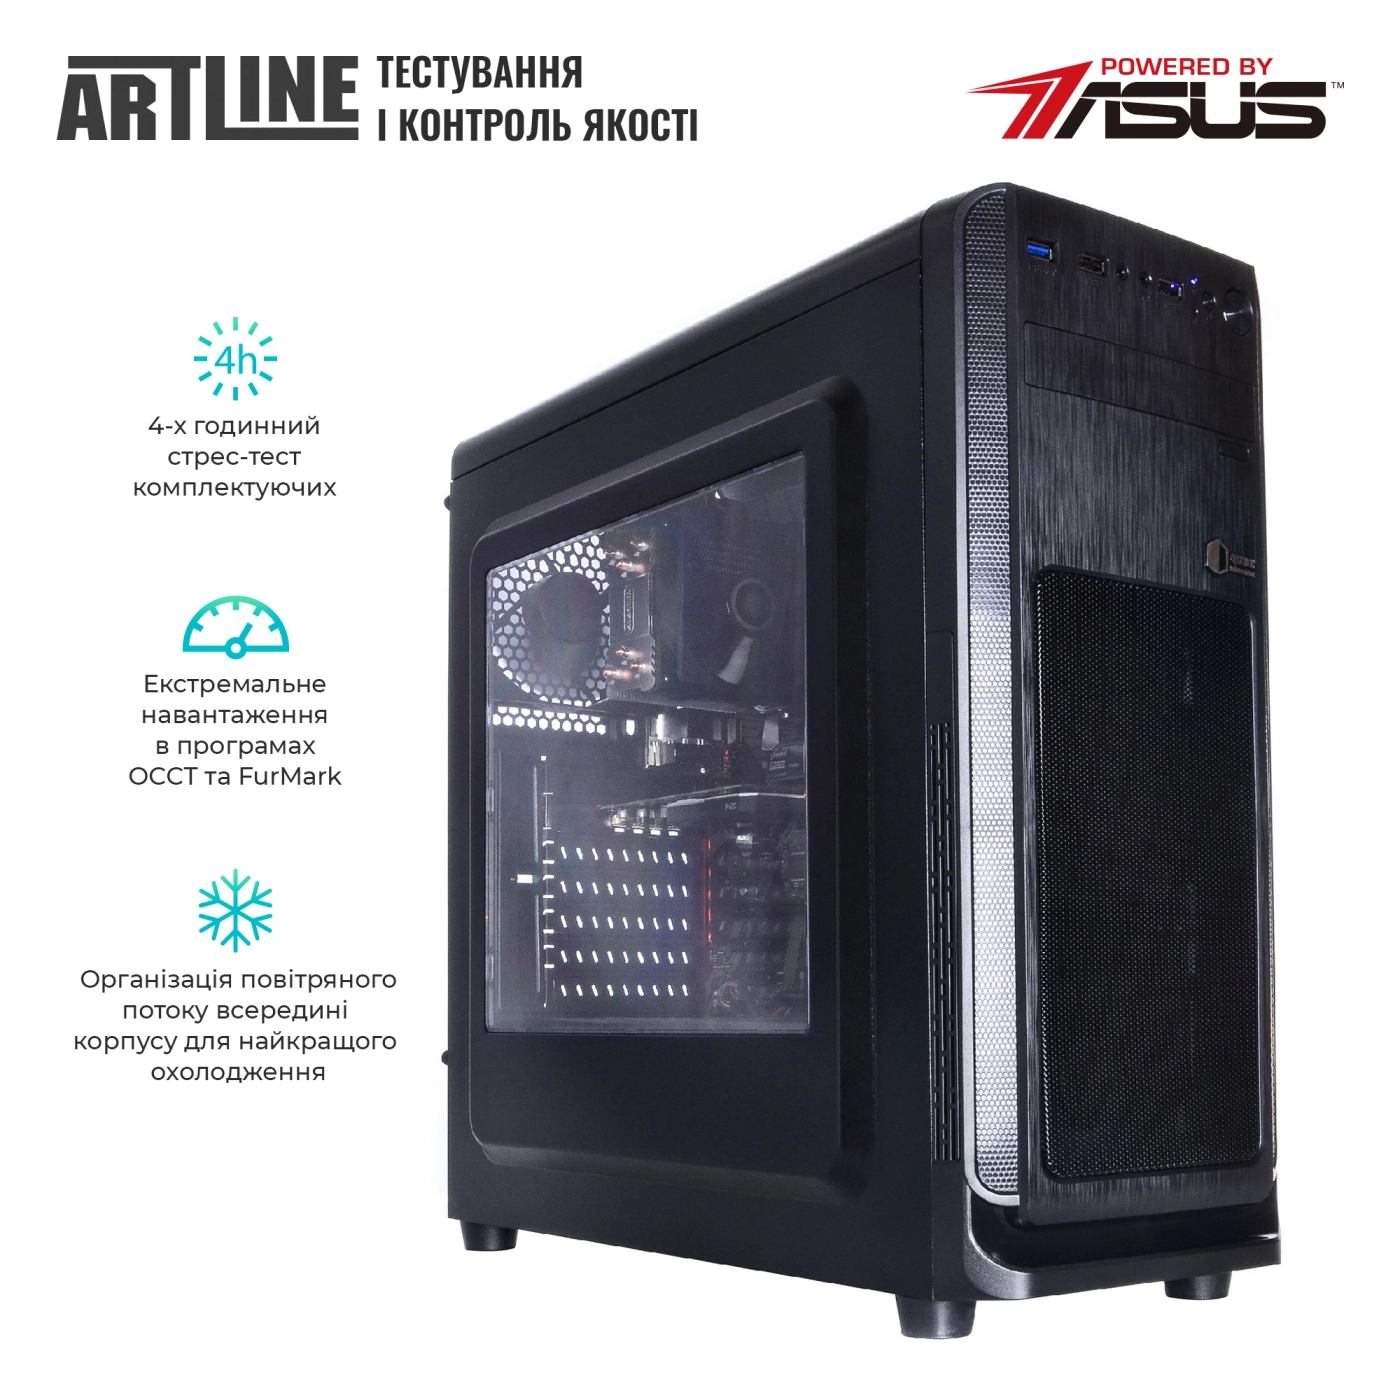 Купить Сервер ARTLINE Business T17v20 - фото 6